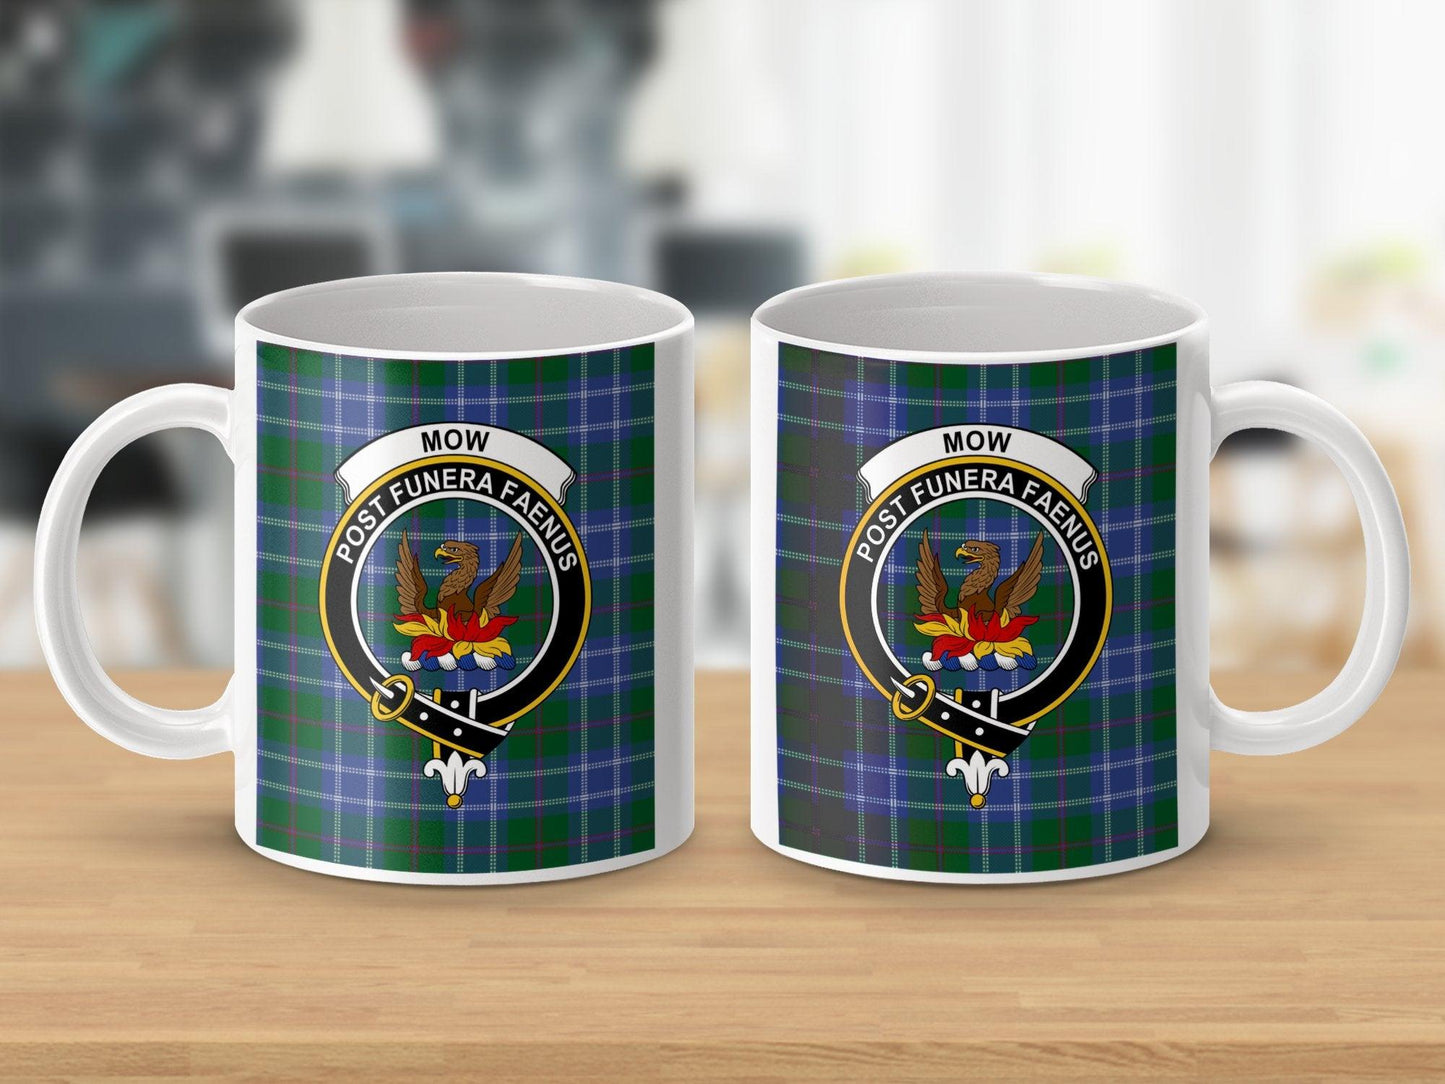 Scottish Clan Mow Crest Tartan Mug - Living Stone Gifts